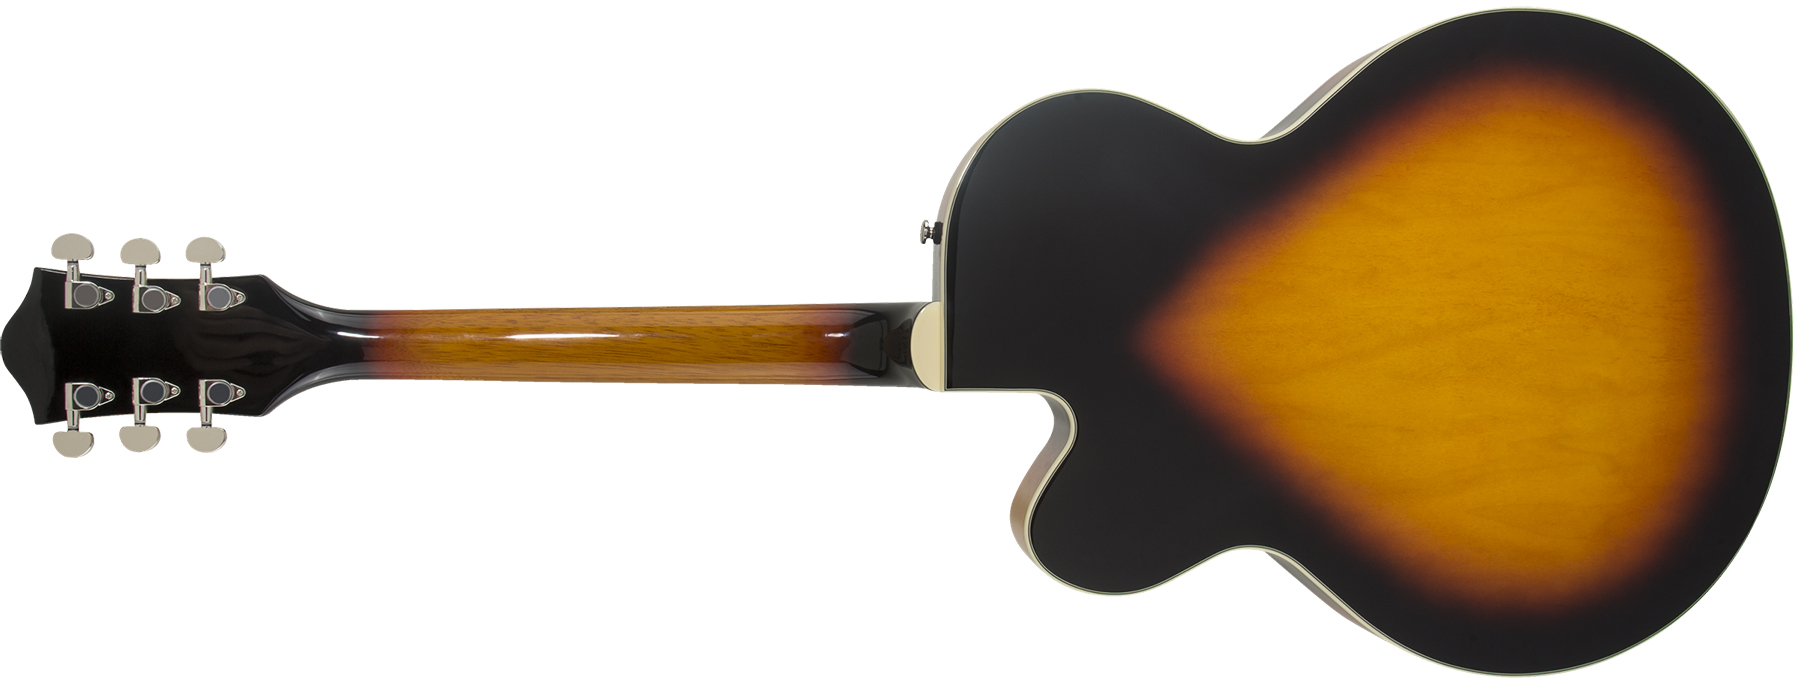 Gretsch G2420 Streamliner Hollow Body With Chromatic Ii 2h Ht Lau - Aged Brooklyn Burst - Semi hollow elektriche gitaar - Variation 1